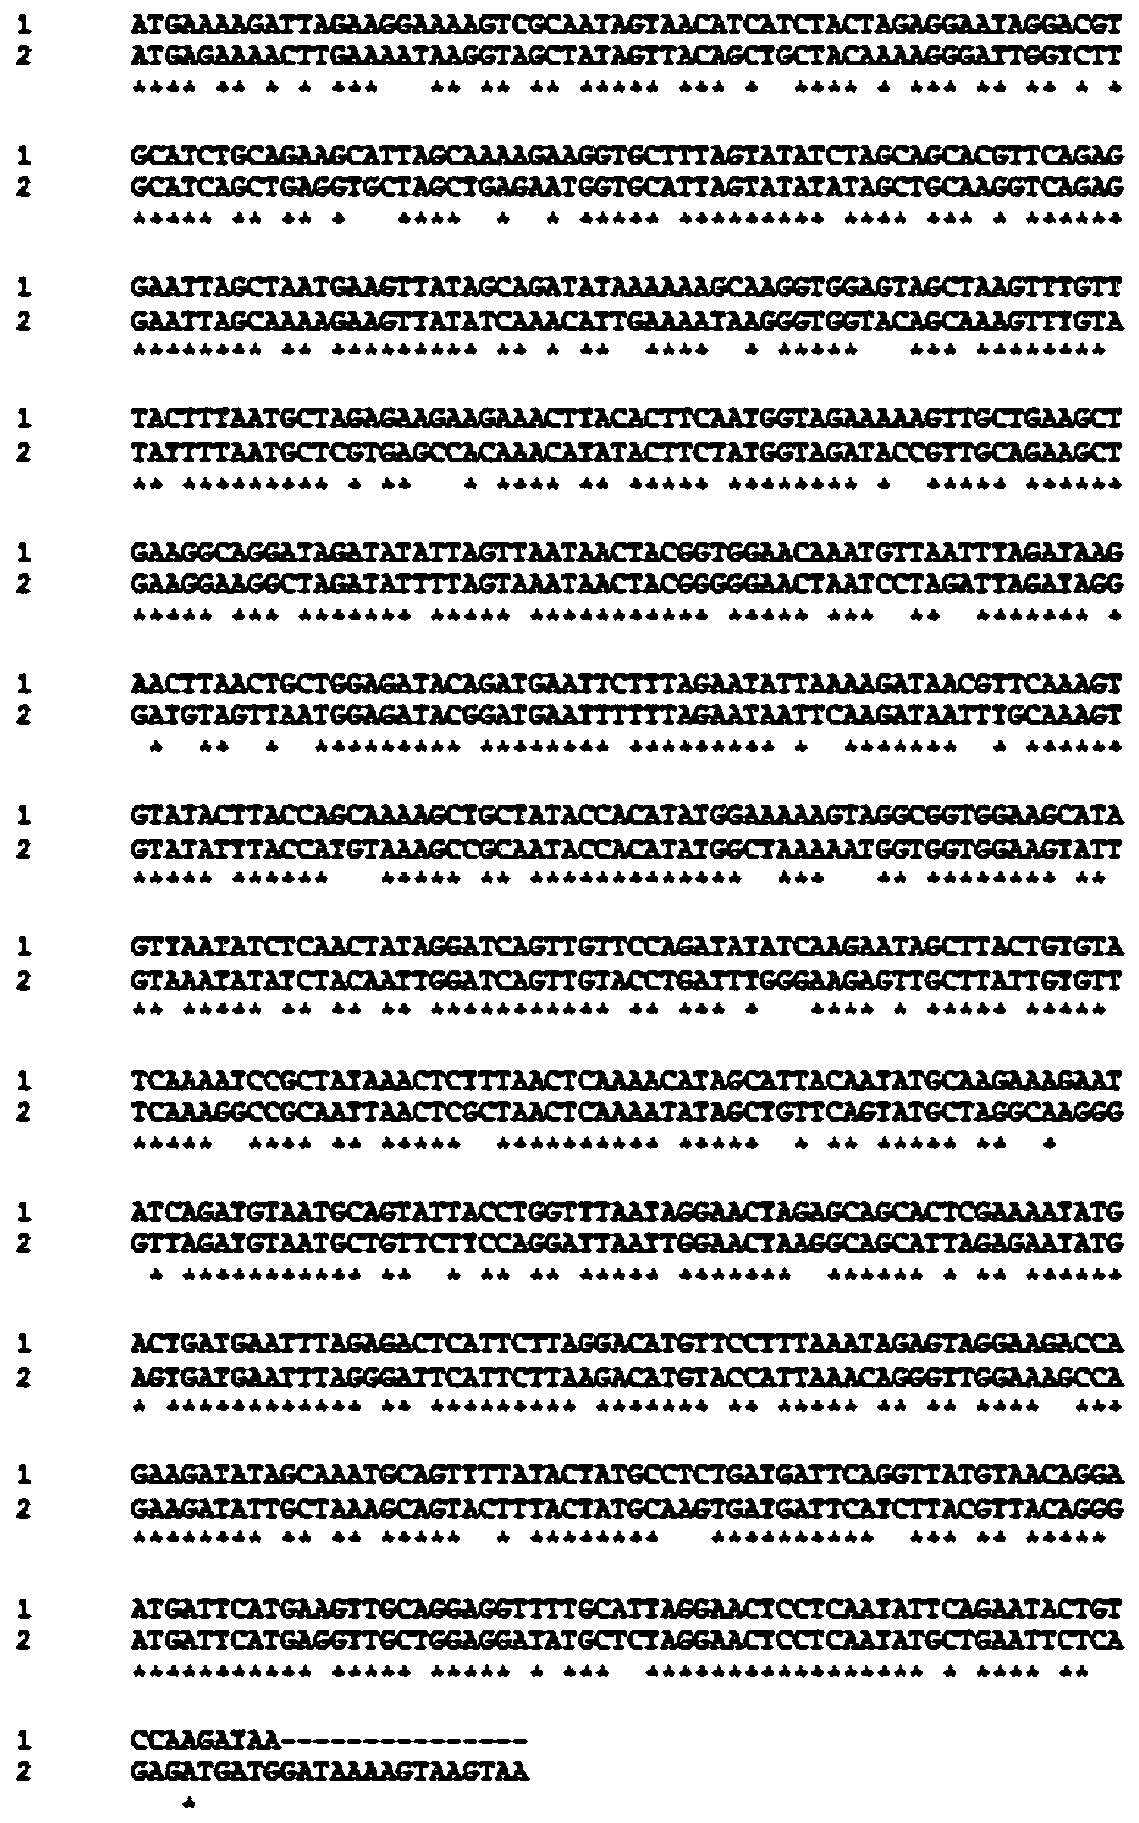 7α-hydroxysteroid dehydrogenase gene s1-a-2